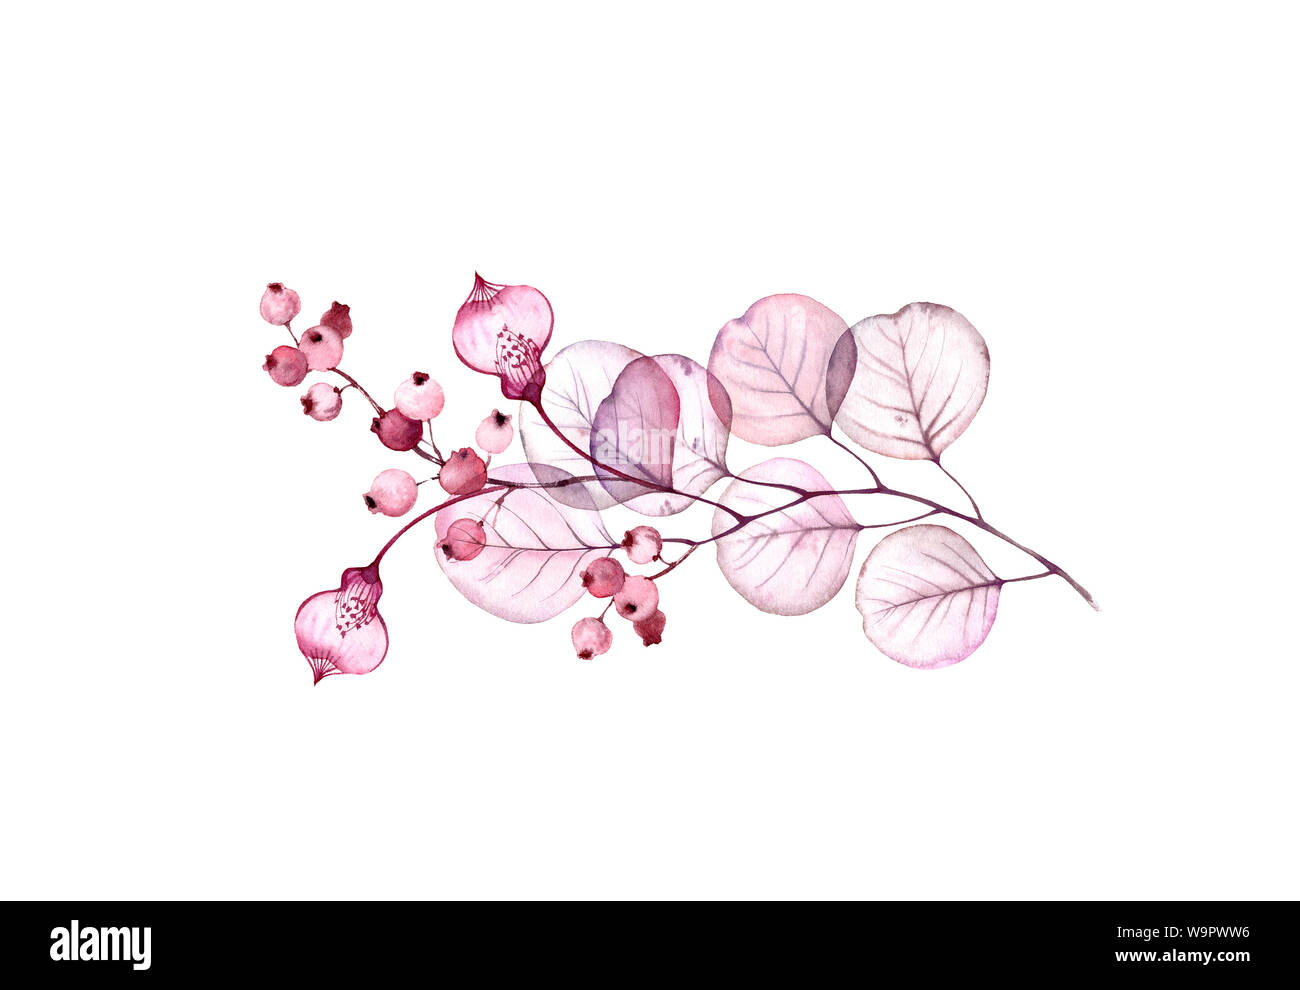 Trasparente set floreali disposizione isolata di fiori esotici, bacche, foglie e rami in rosa pastello, grigio, viola, porpora, ornamento vintage Foto Stock